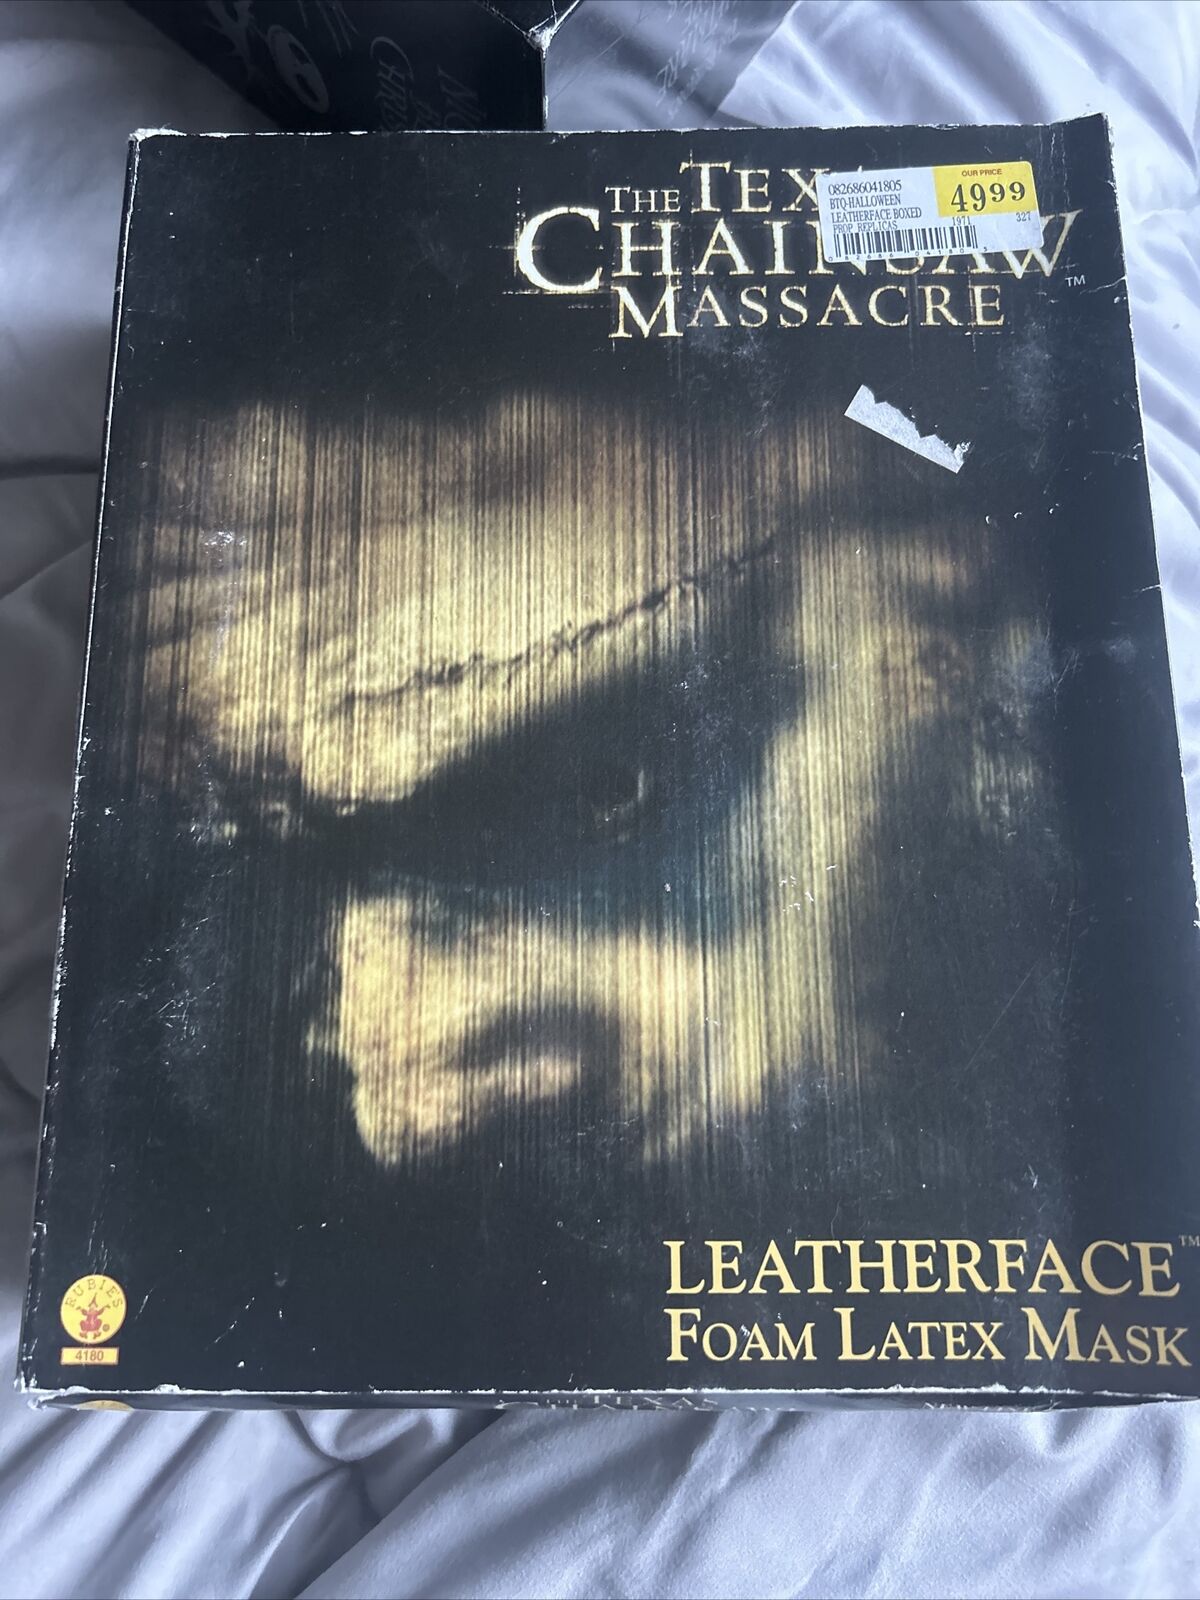 TEXAS CHAINSAW MASSACRE Leatherface 2003 Foam Latex Mask